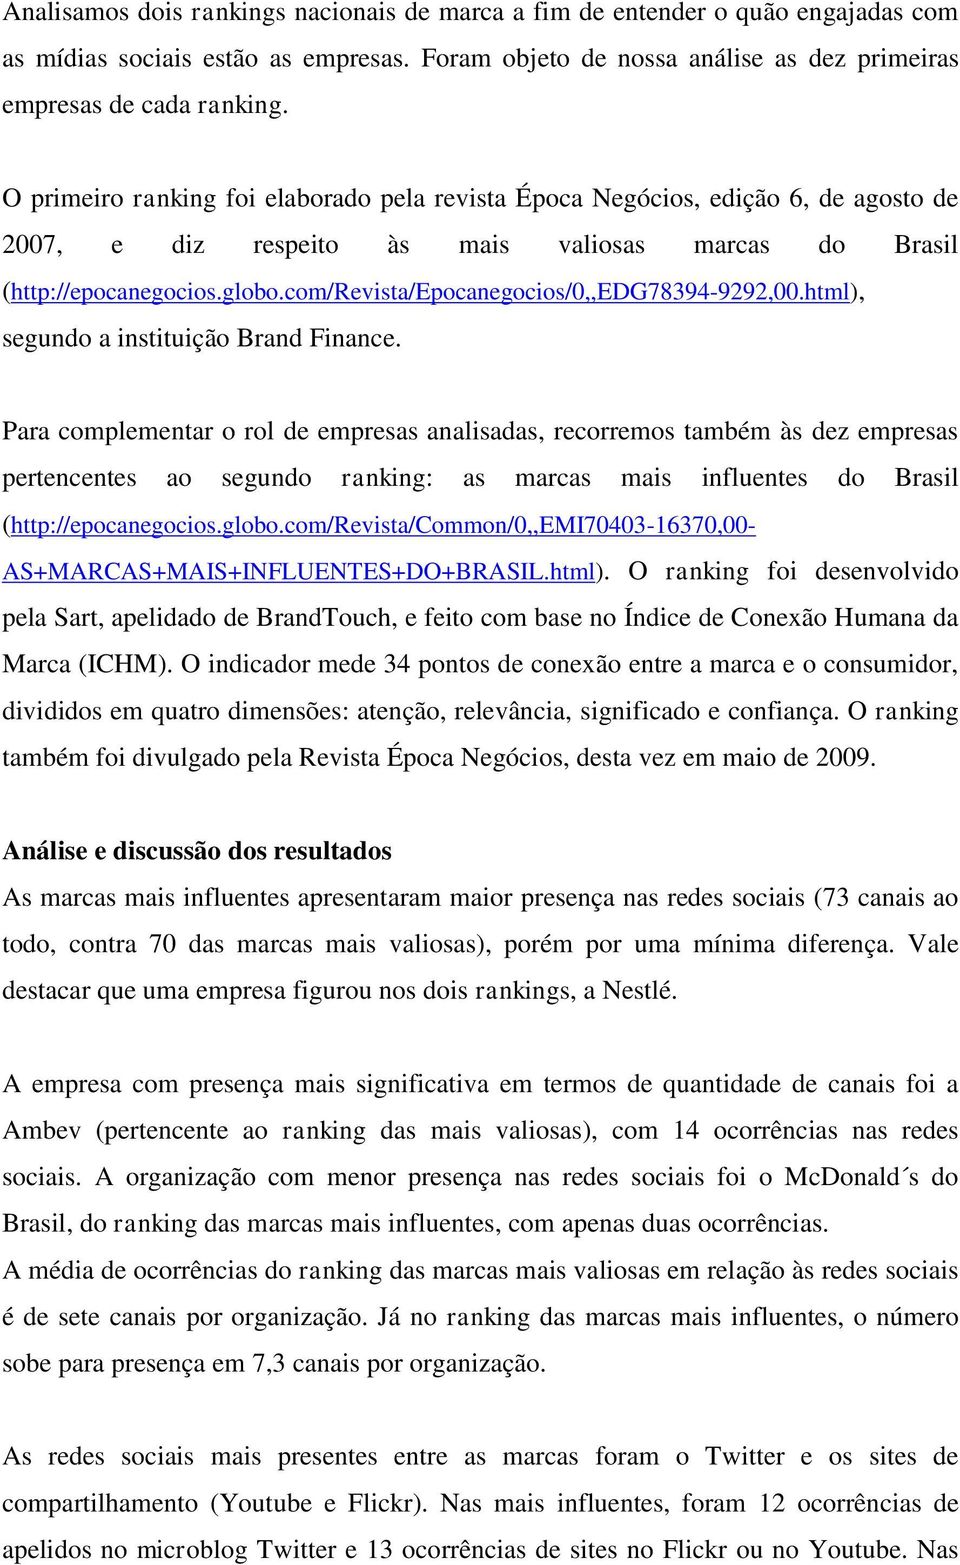 com/revista/epocanegocios/0,,edg7894-9292,00.html), segundo a instituição Brand Finance.